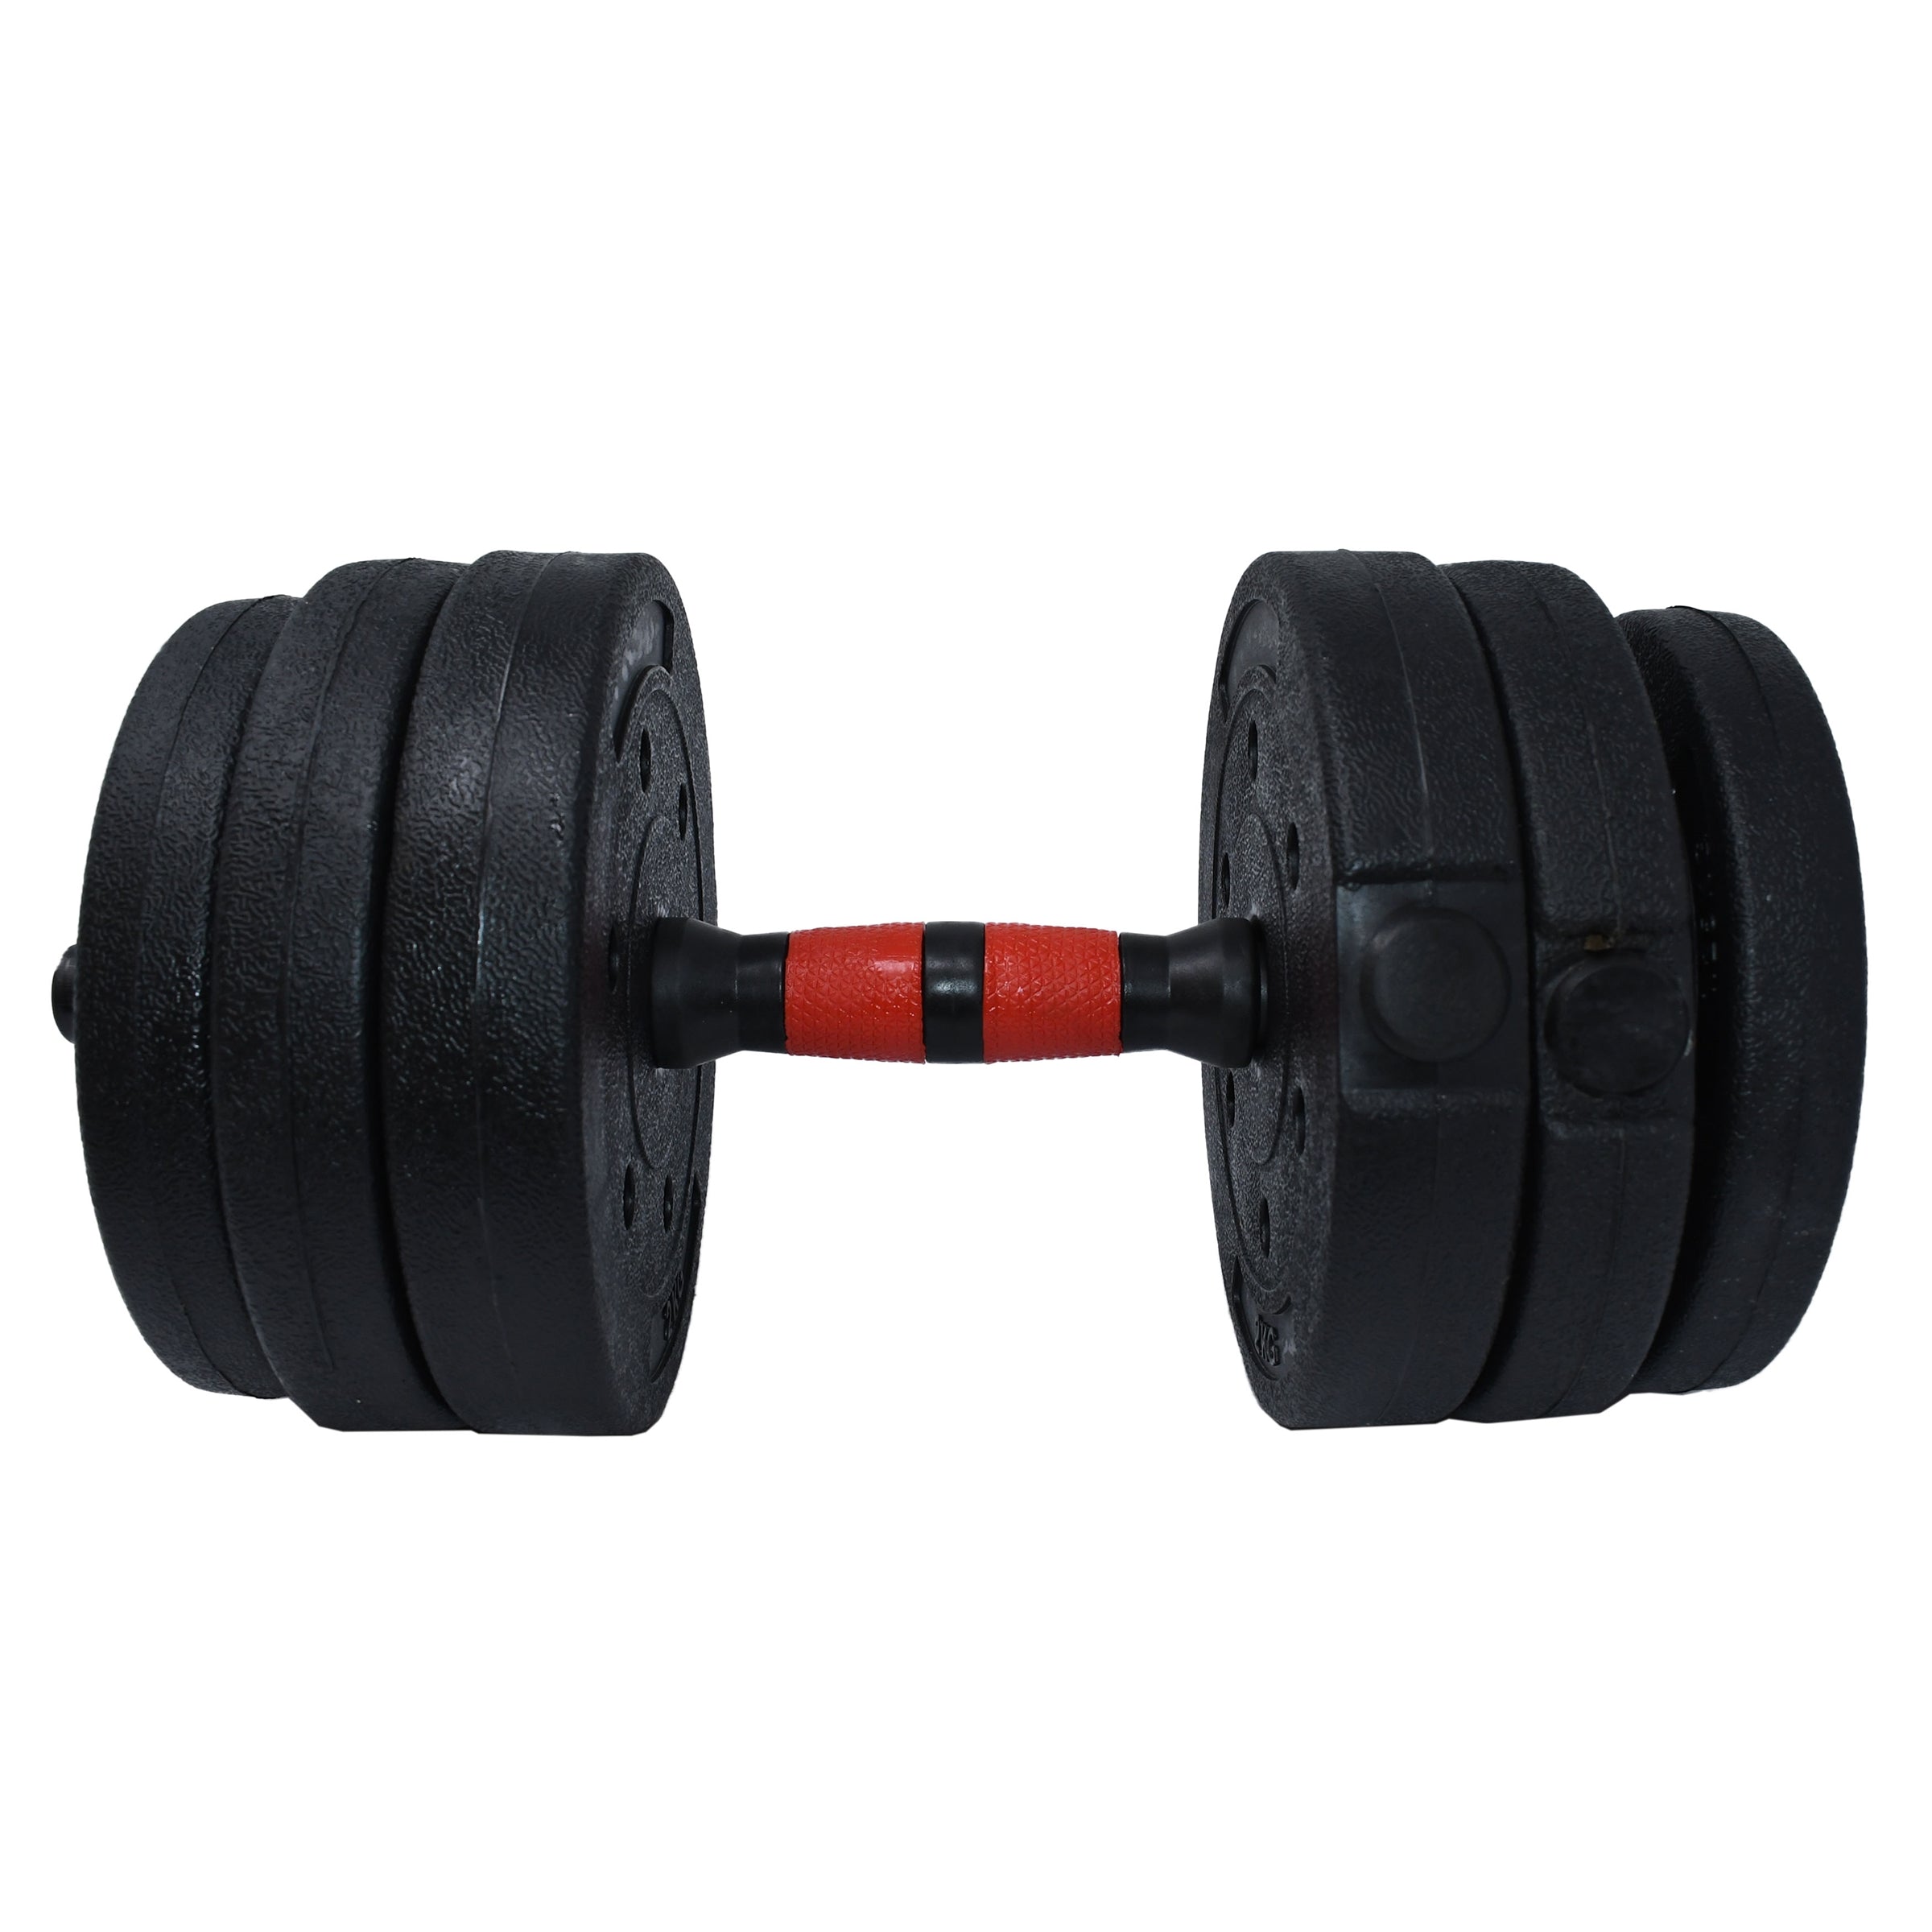 Adjustable Dumbbell Set for Home Gym Black